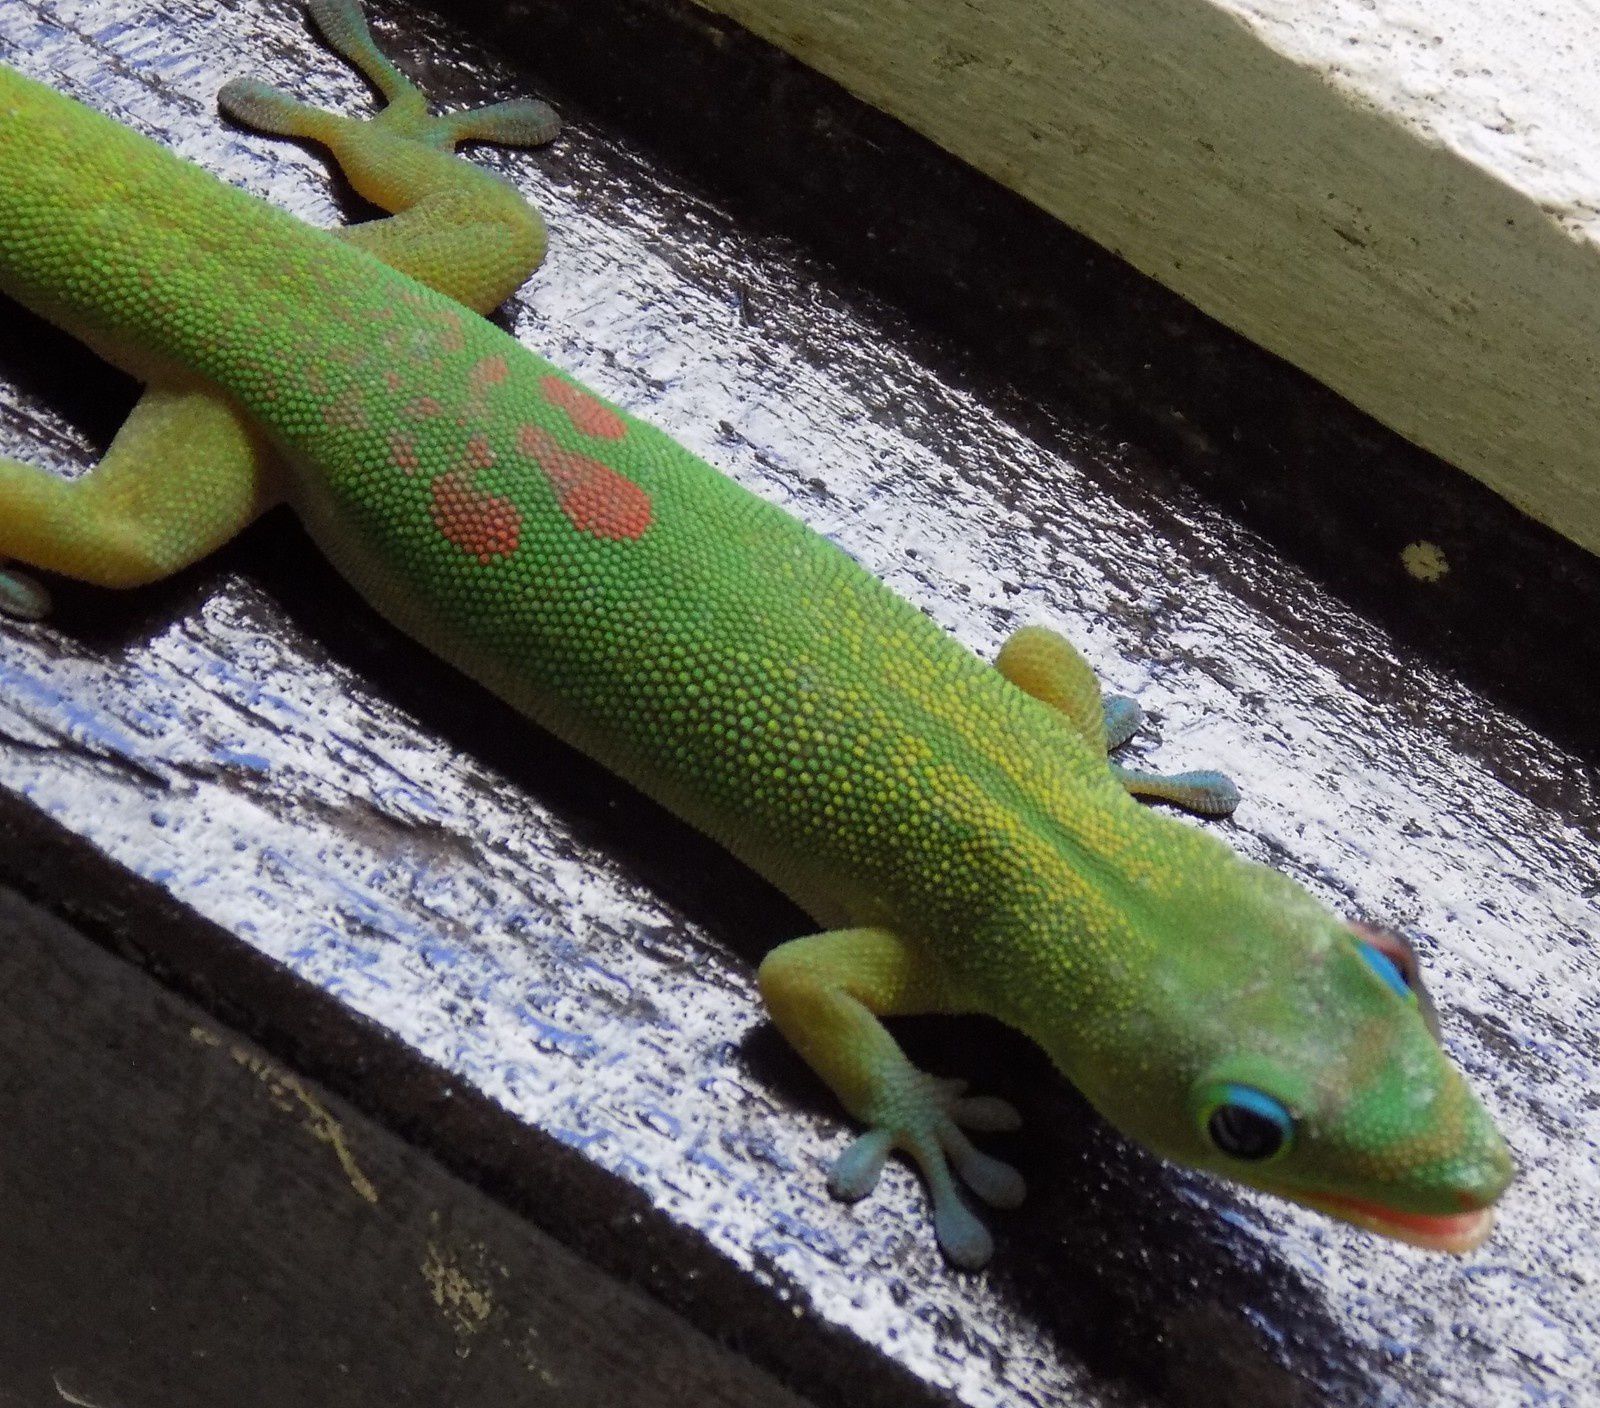 GECKO DE HAWAI A MOOREA - Hawaian Gecko in Moorea